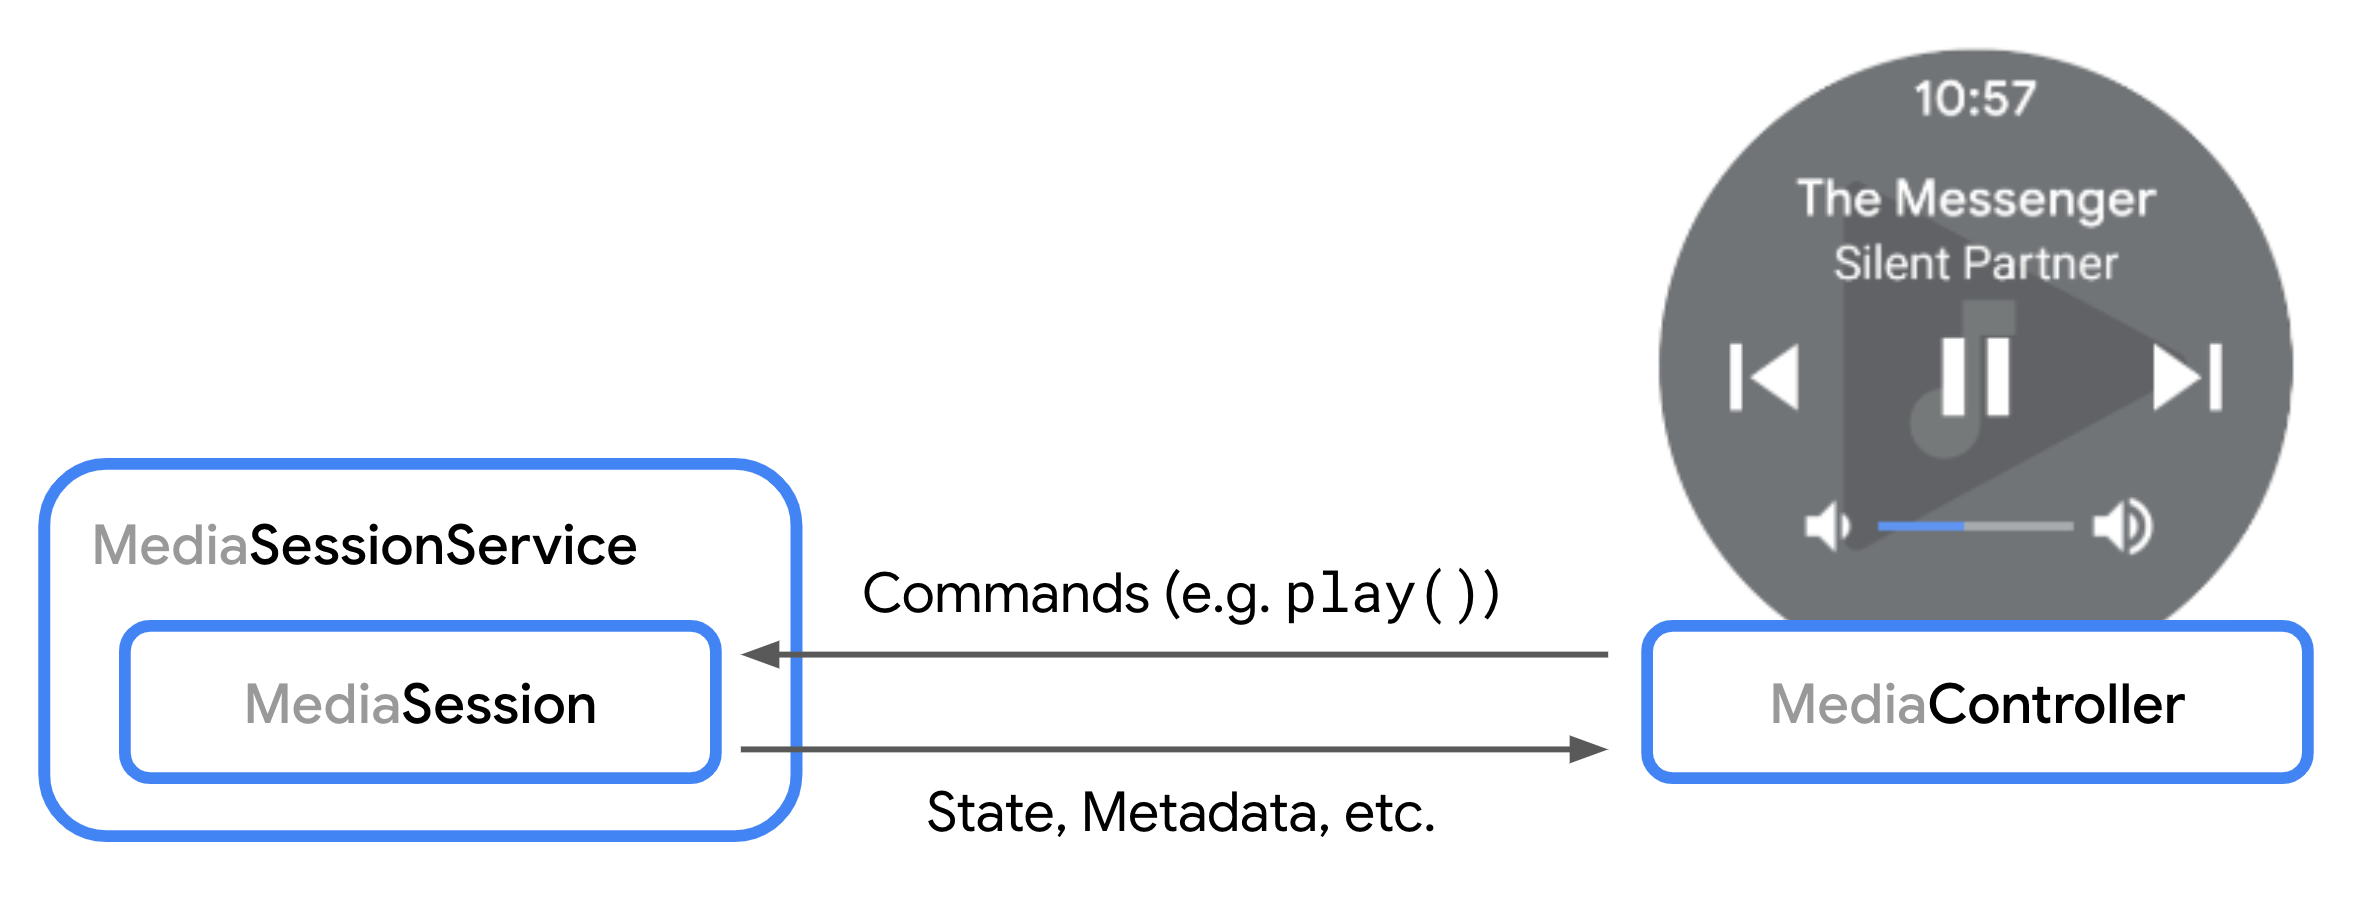 Diagrama que muestra la interacción entre un MediaSession y un MediaController.